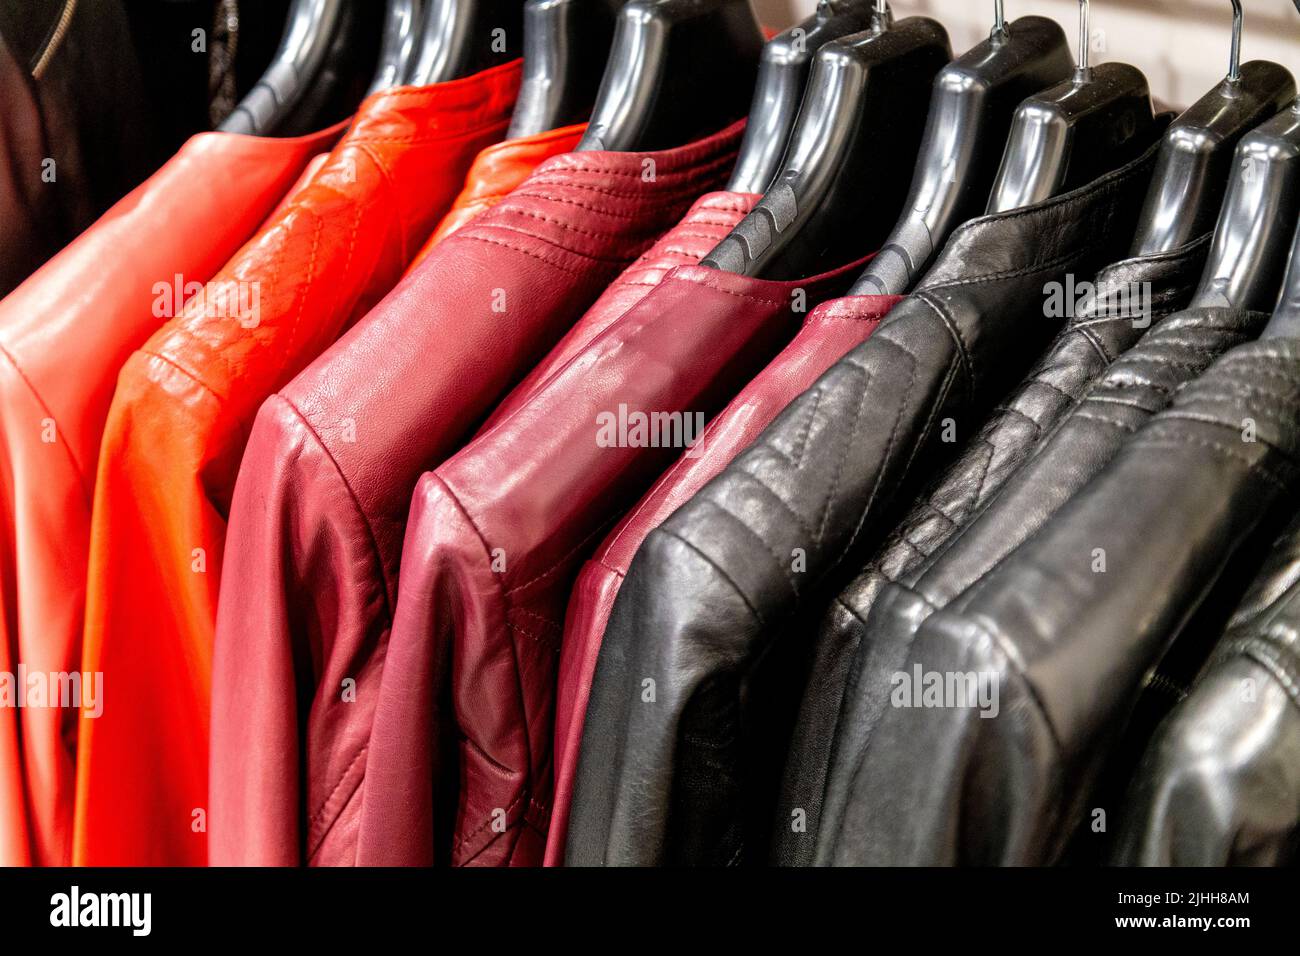 Vestes en cuir coloré en rouge et noir accrochées sur un rail Banque D'Images